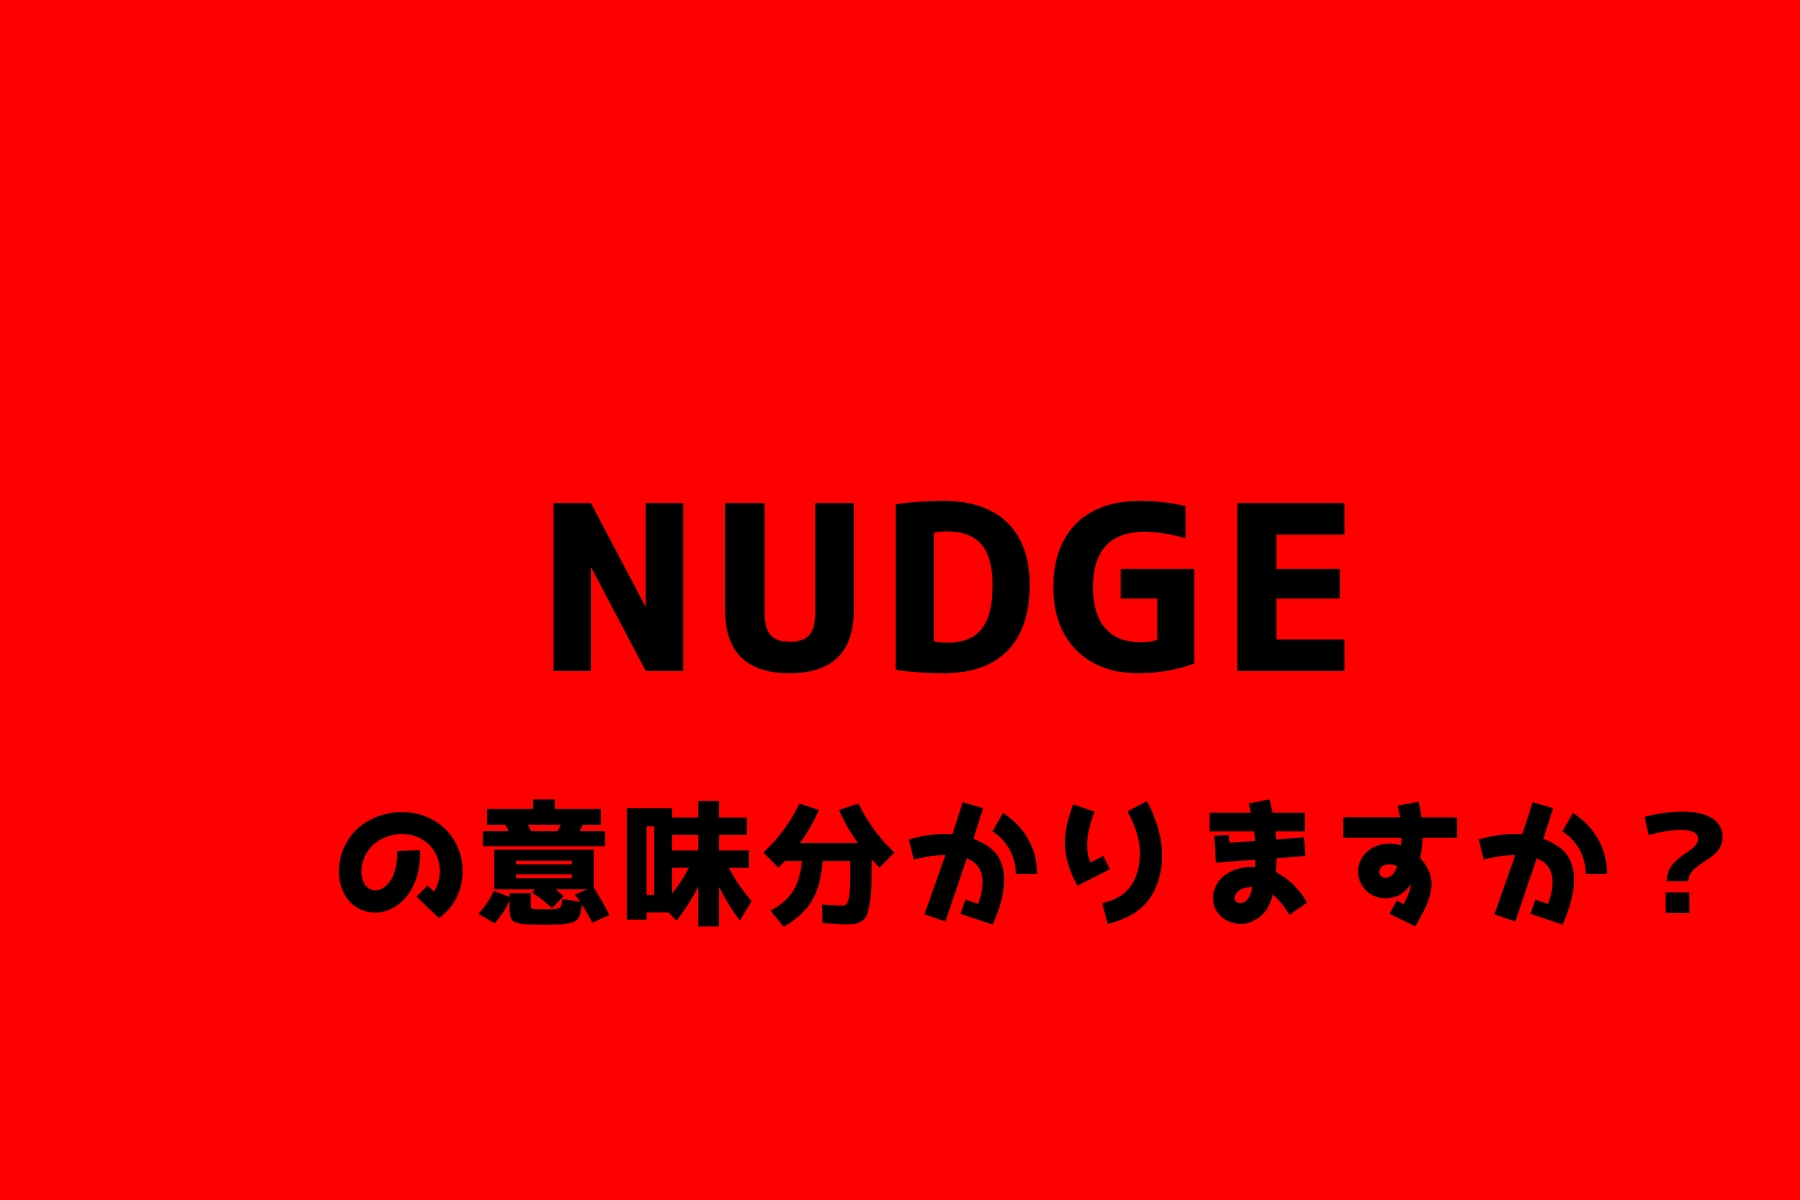 nudge_top